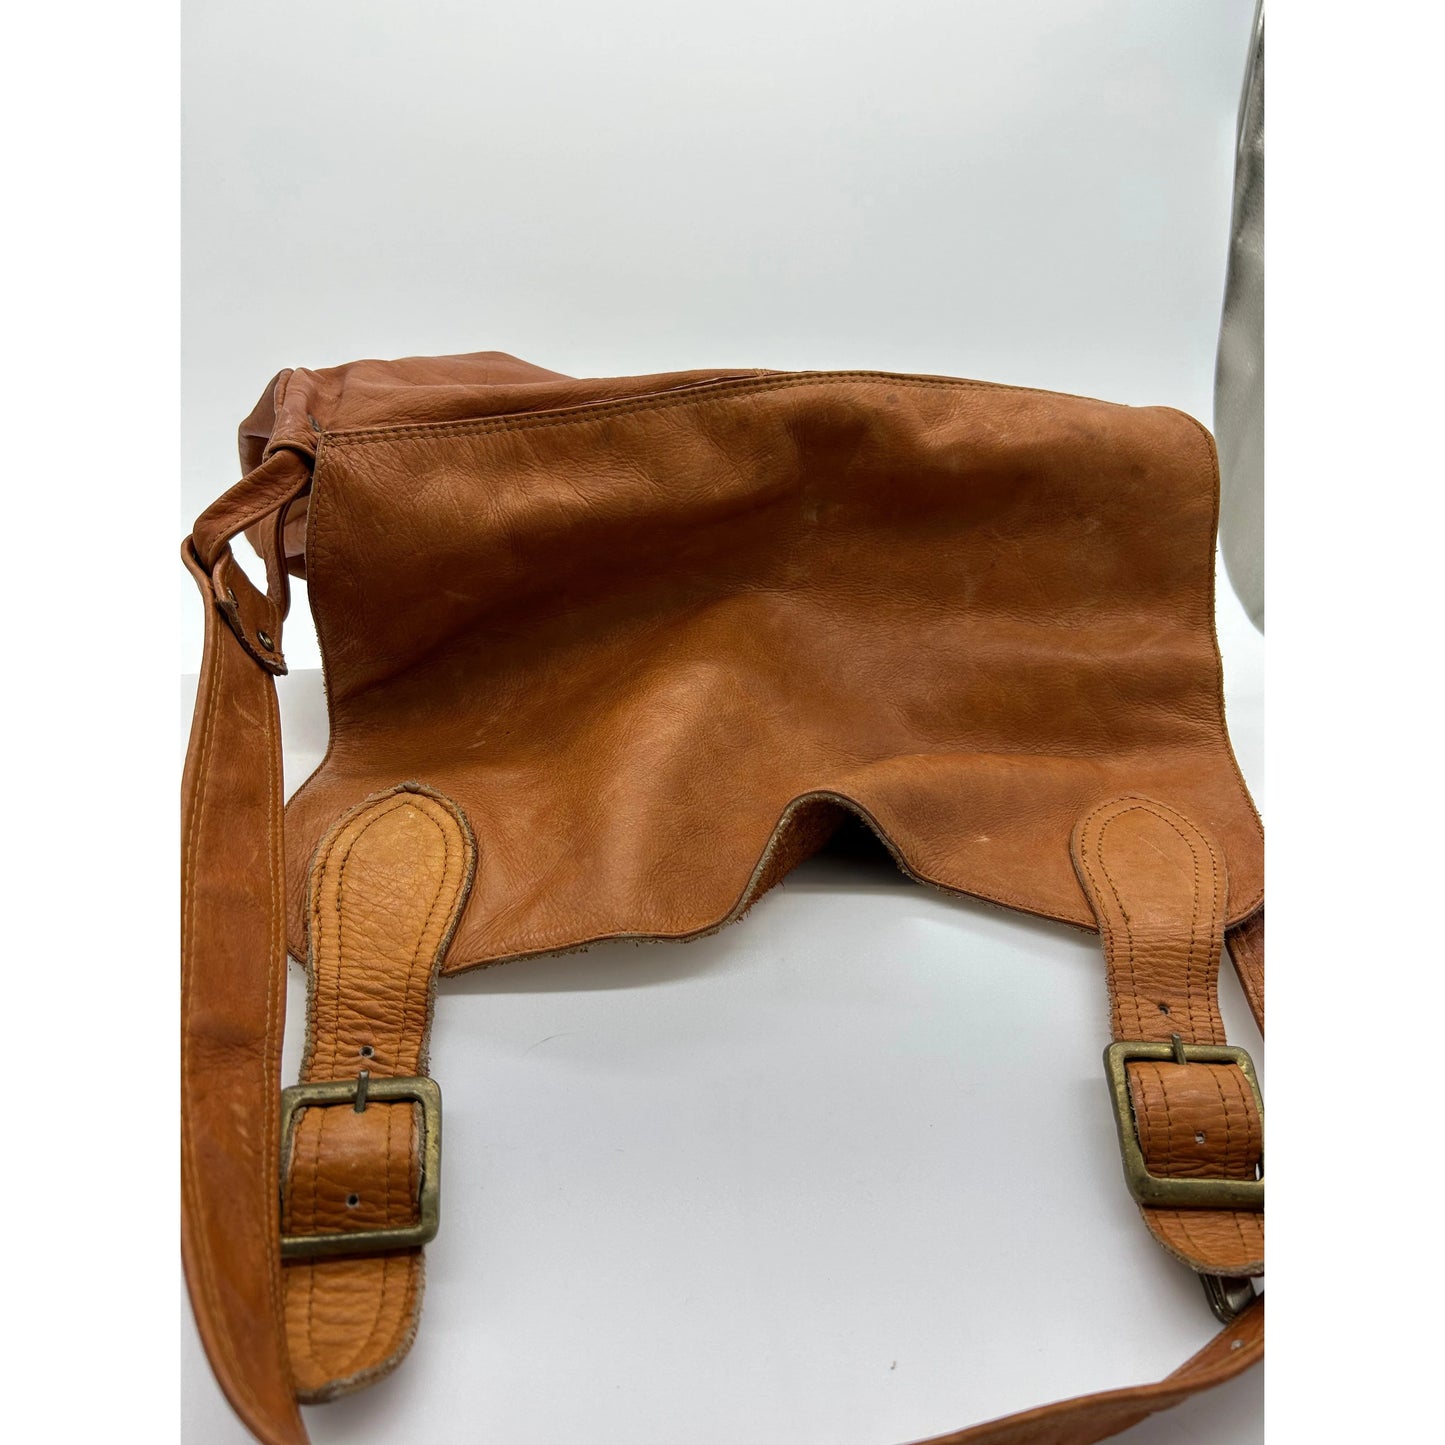 Leather Saddle Bag, Shoulder or Crossbody Bag